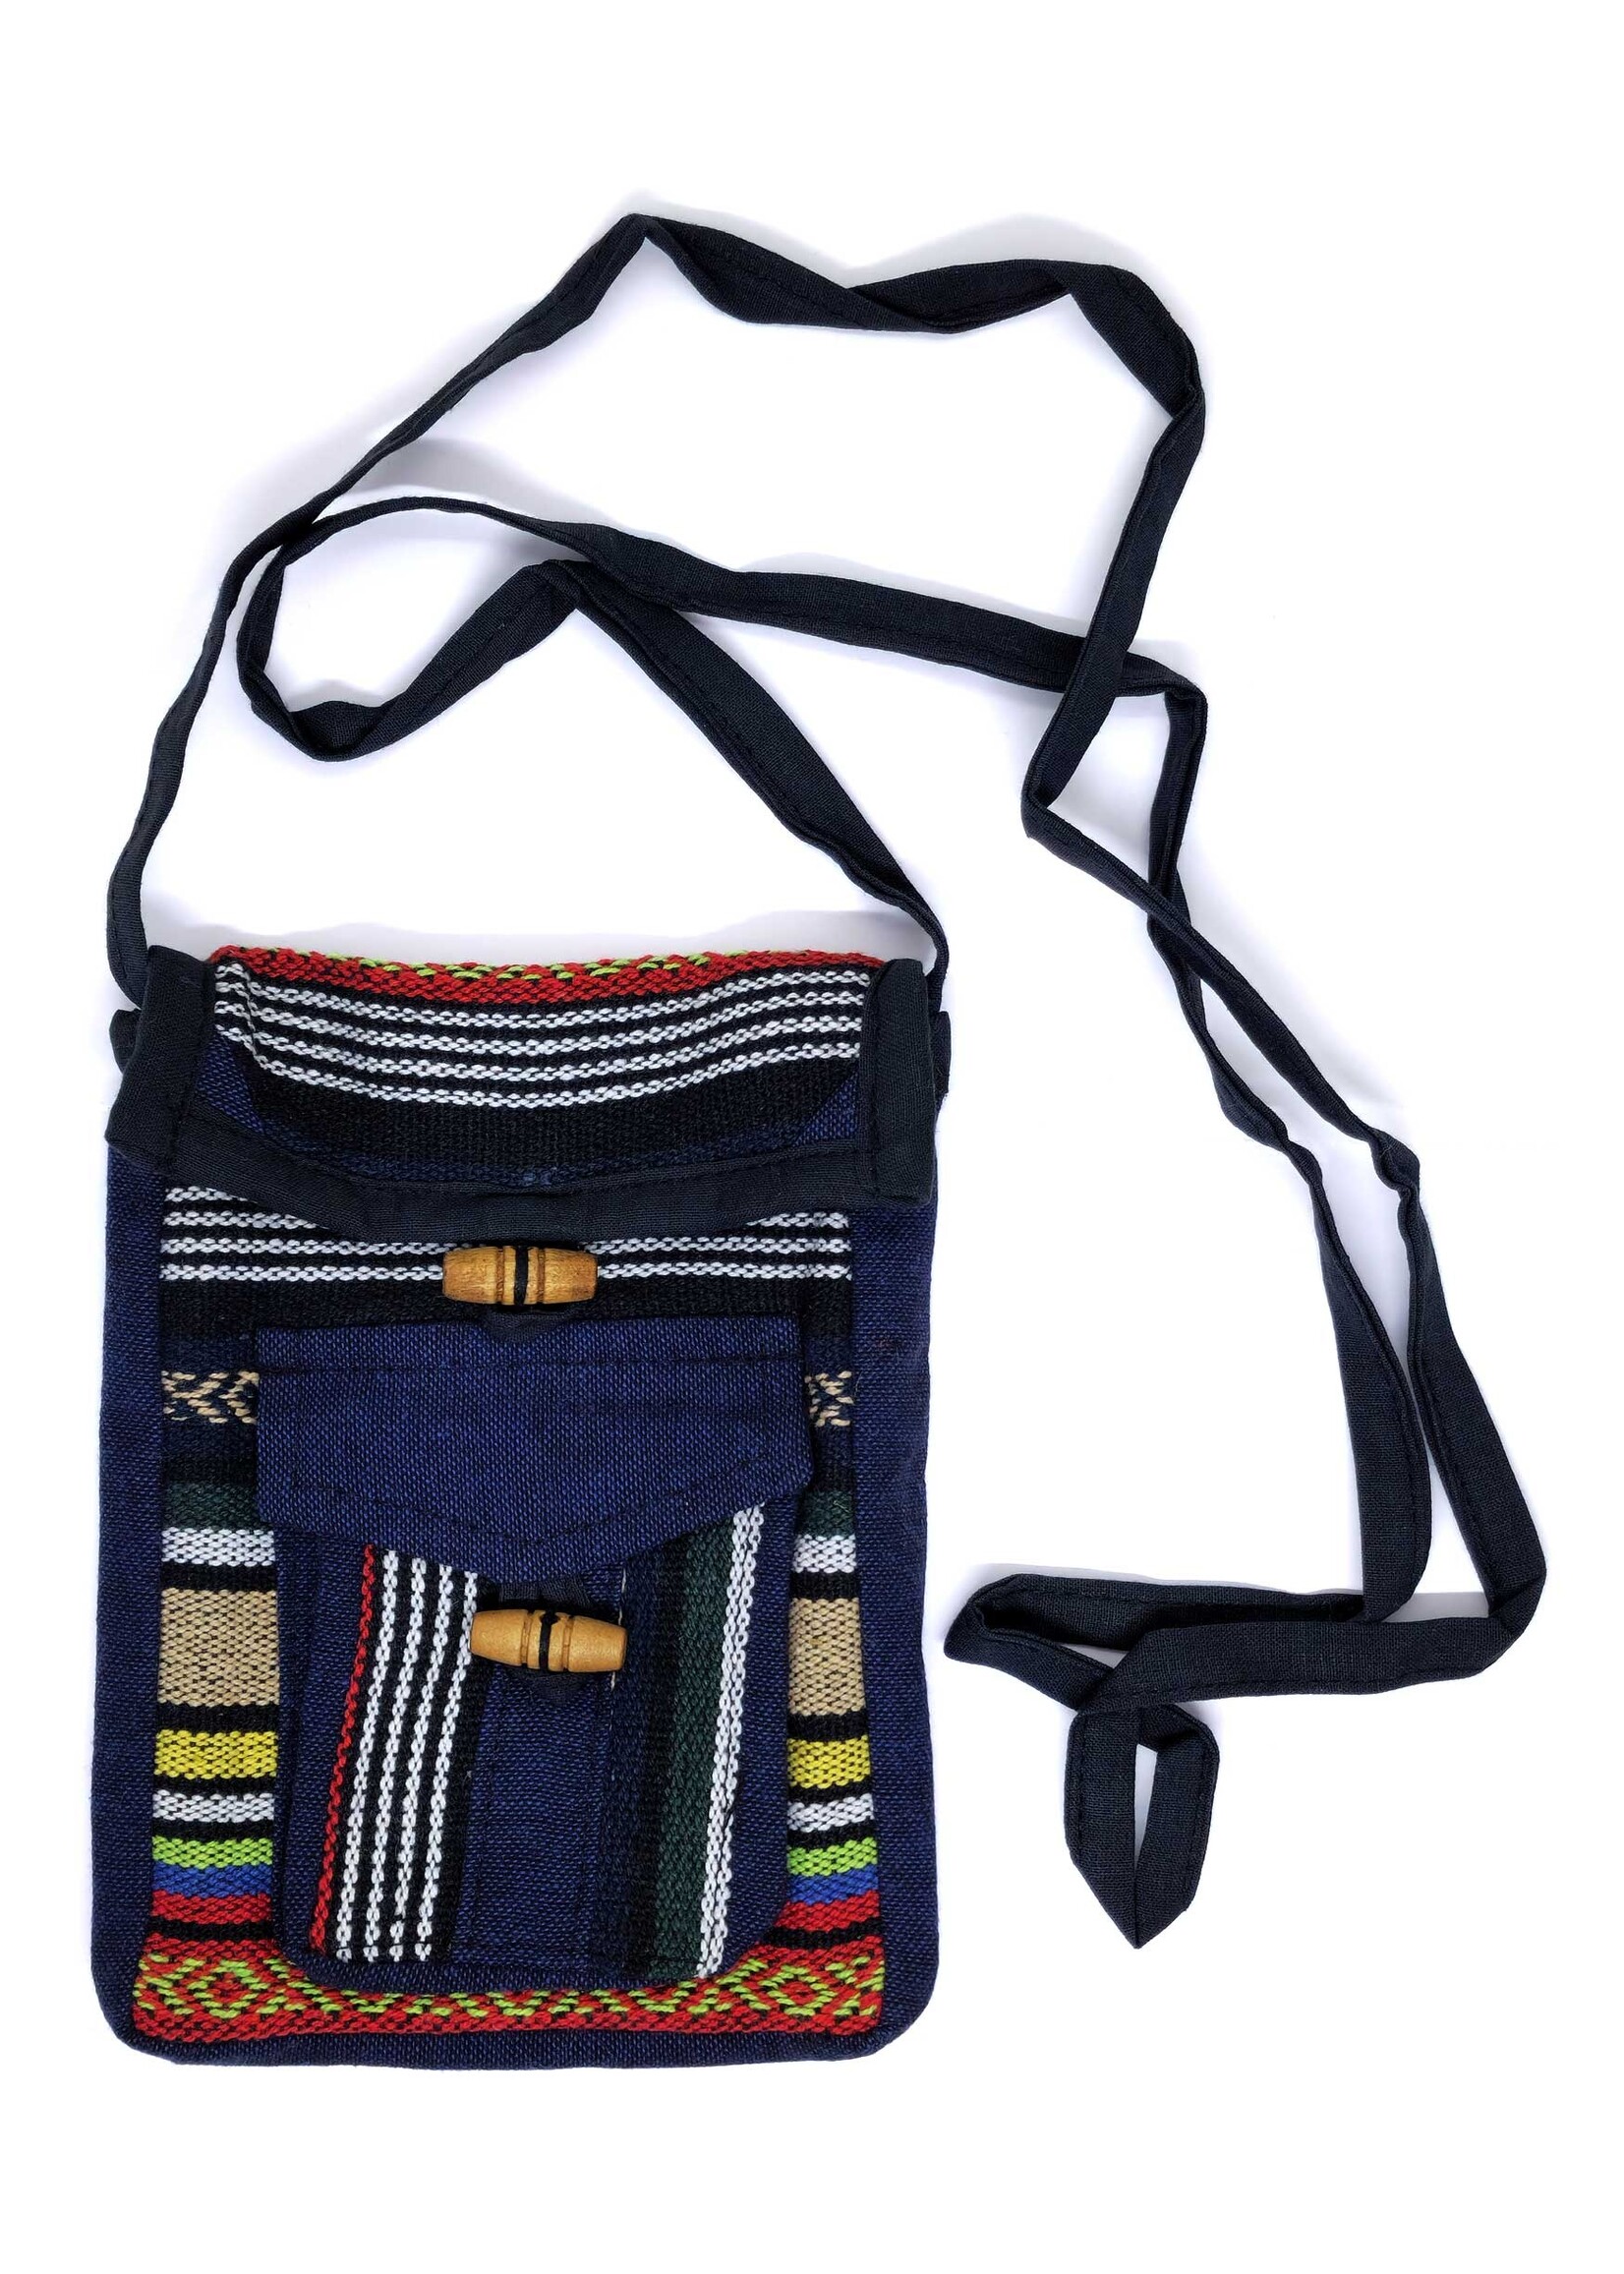 Petit sac à bandoulière tibétain, en coton tissé à la main, Ngonag